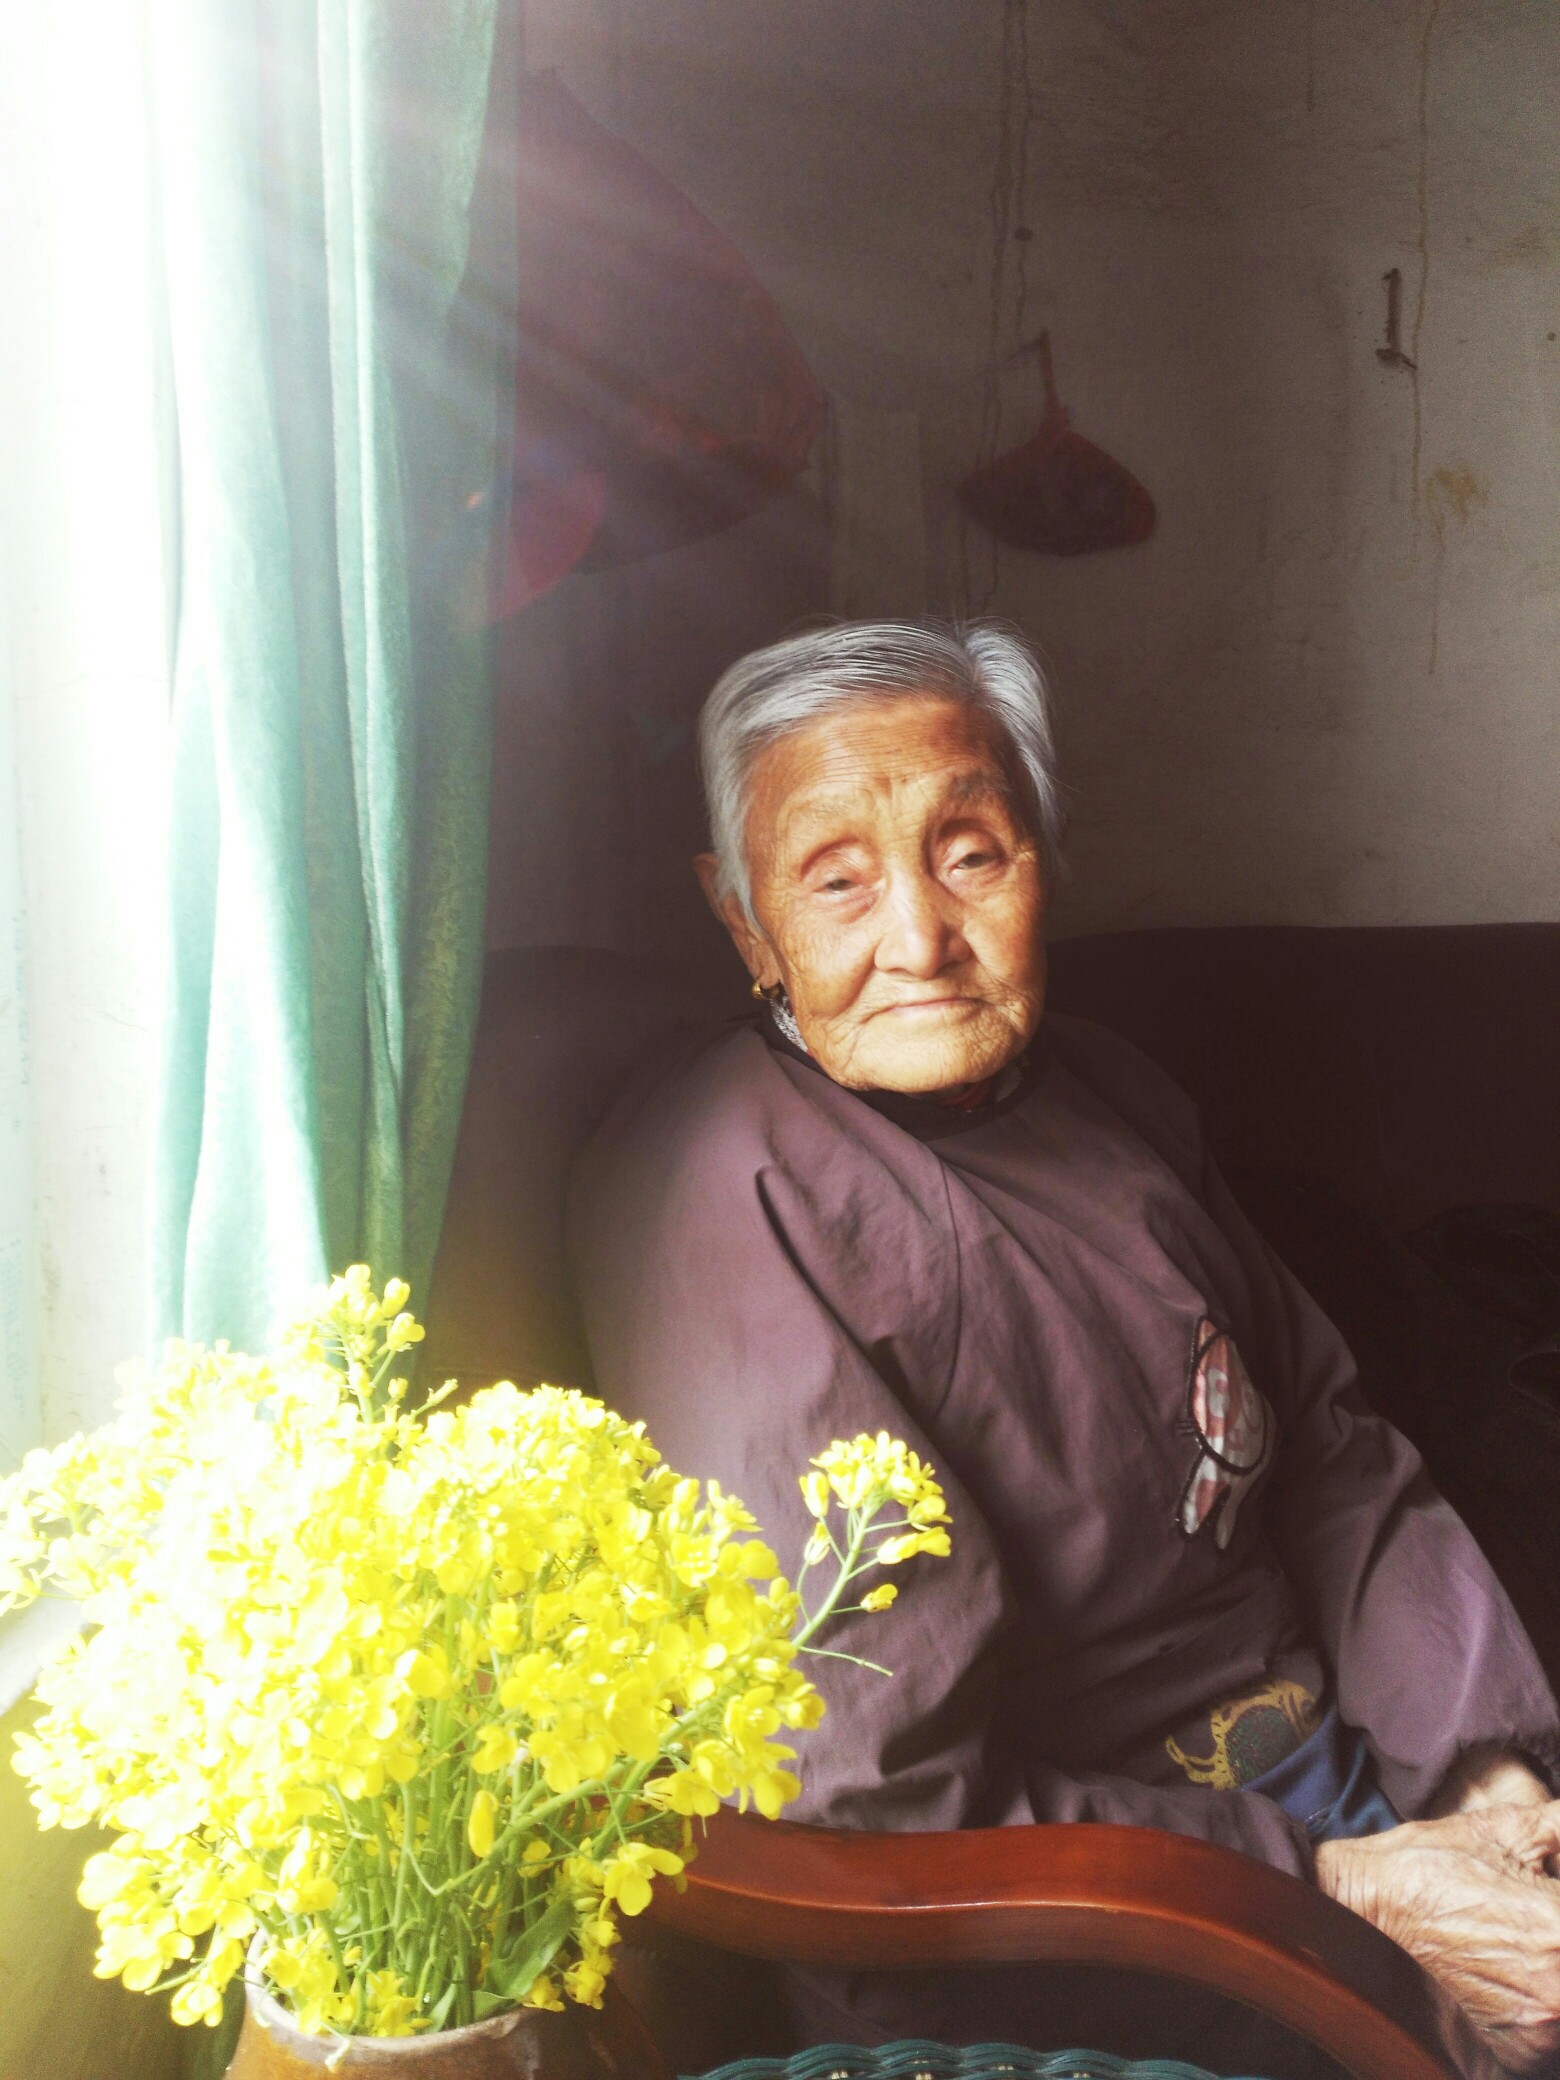 奶奶给孙女发压岁钱-蓝牛仔影像-中国原创广告影像素材